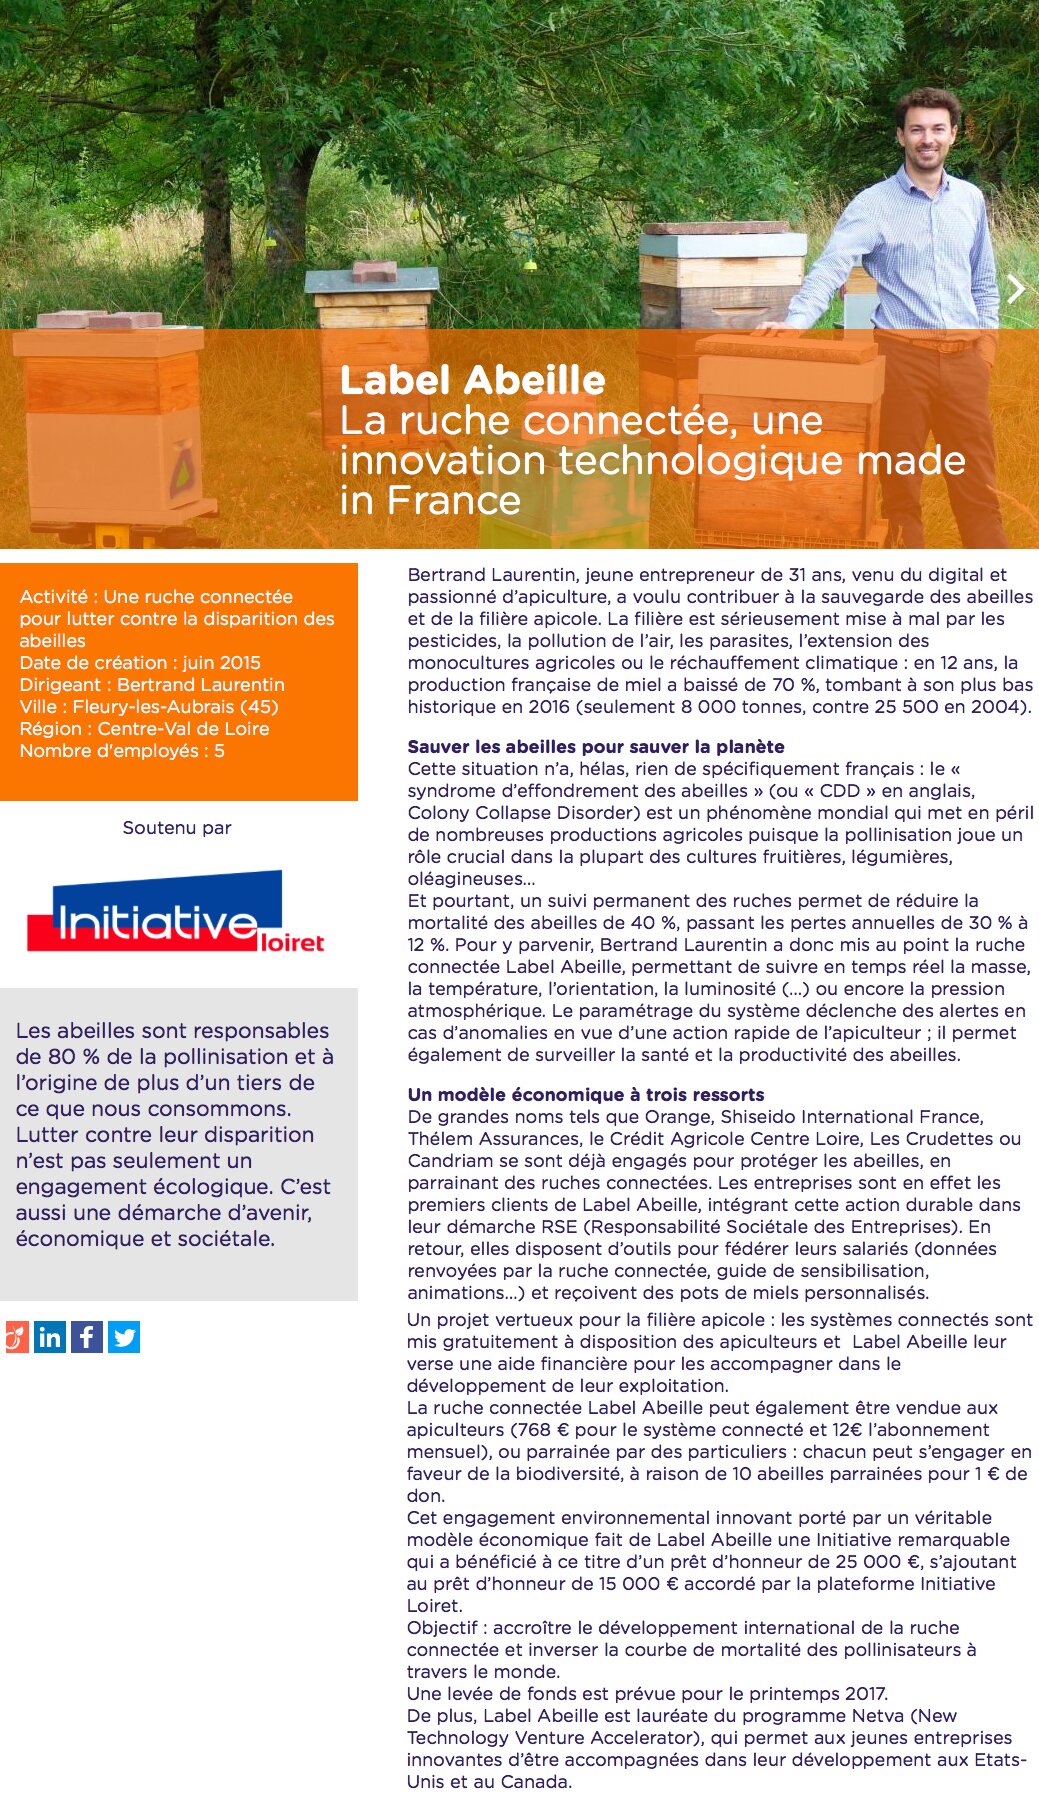 LABEL ABEILLE - La ruche connectée, innovation Made in France, a été reconnue par Initiative France et Initiative Loiret comme Initiative Remarquable